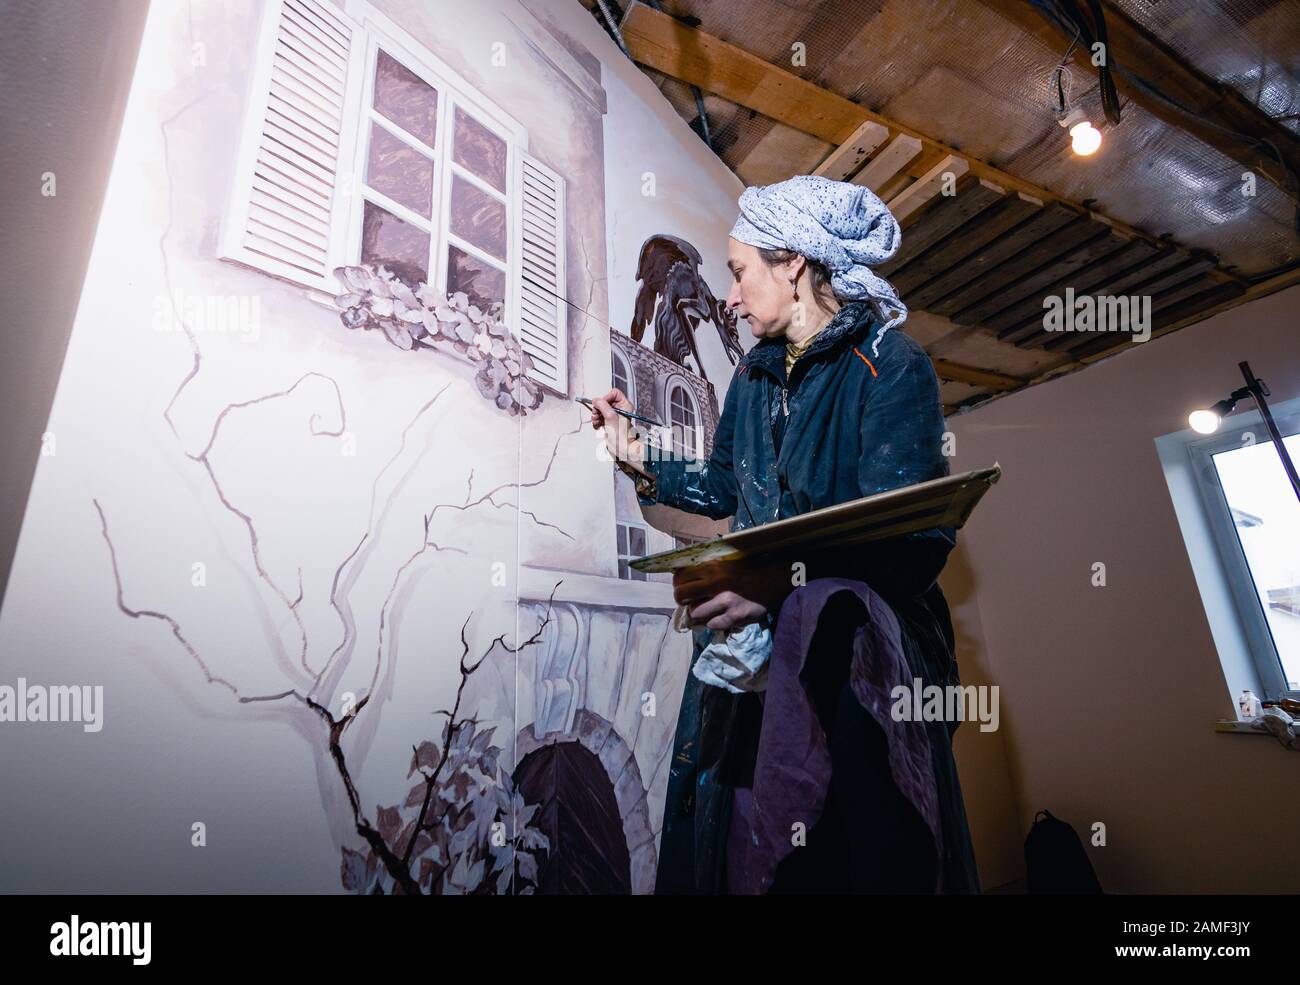 Frauenkünstlerin malt eine Wand in einem Wohnzimmer. Das Wandbild widmet sich den Eindrücken von Paris. Der Autor zeichnet ein Detail - Fensterläden Stockfoto